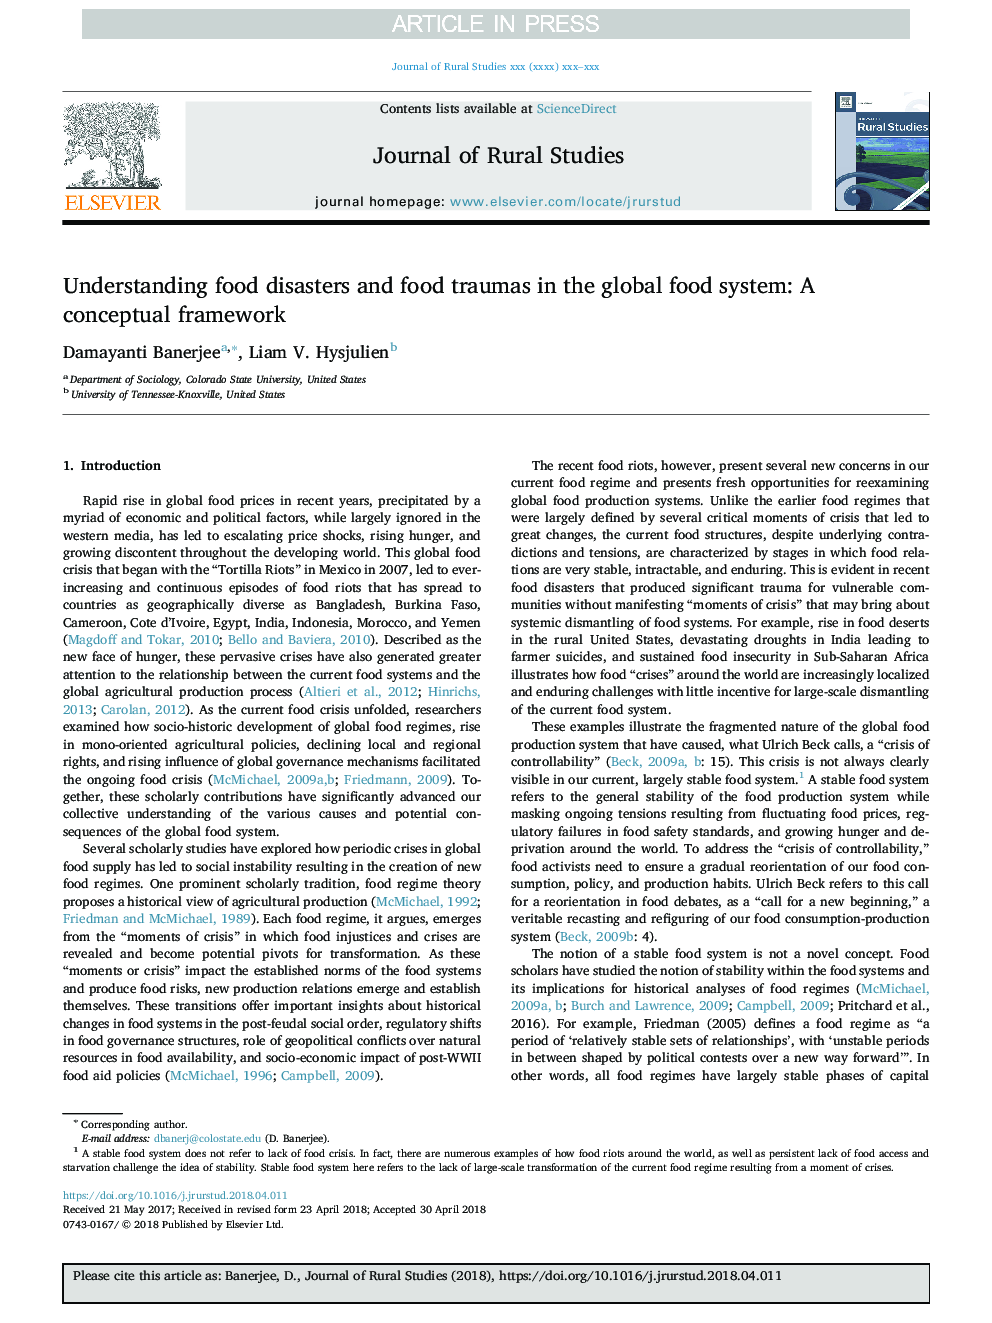 درک فاجعه های غذایی و آسیب های غذایی در سیستم غذای جهانی: یک چارچوب مفهومی 